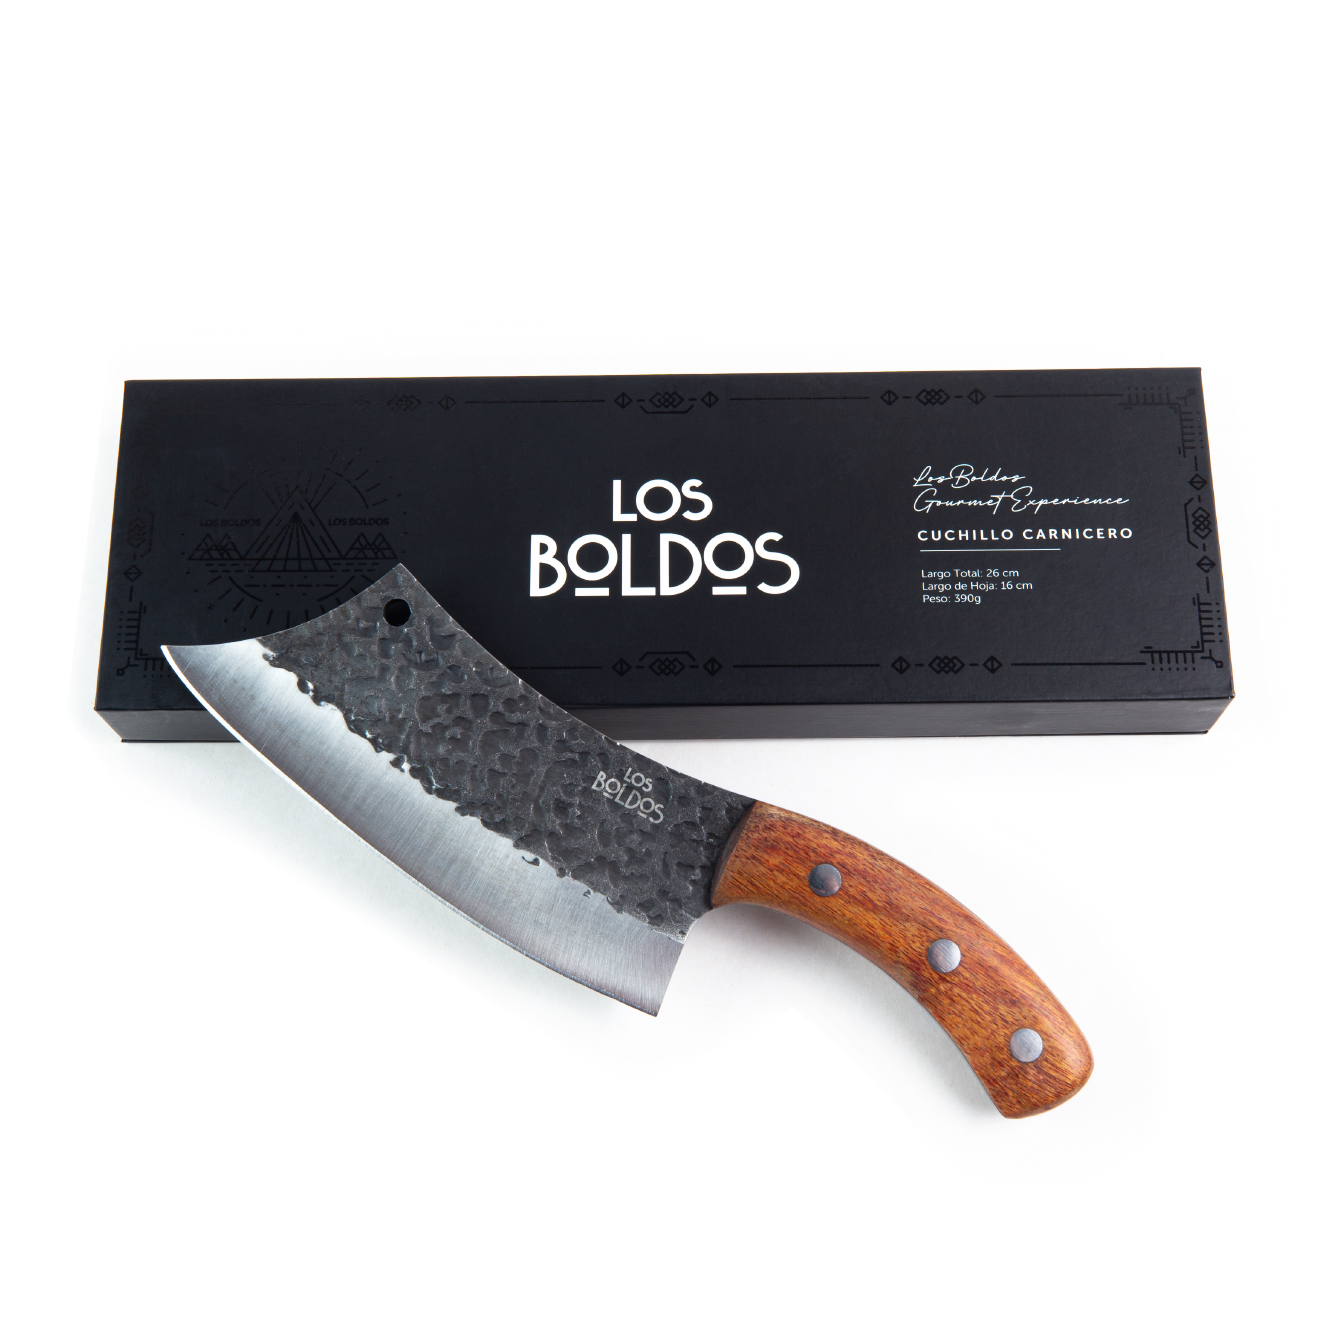 Cuchillo Carnicero I Los Boldos I 390g – Corrales del Sur Temuco